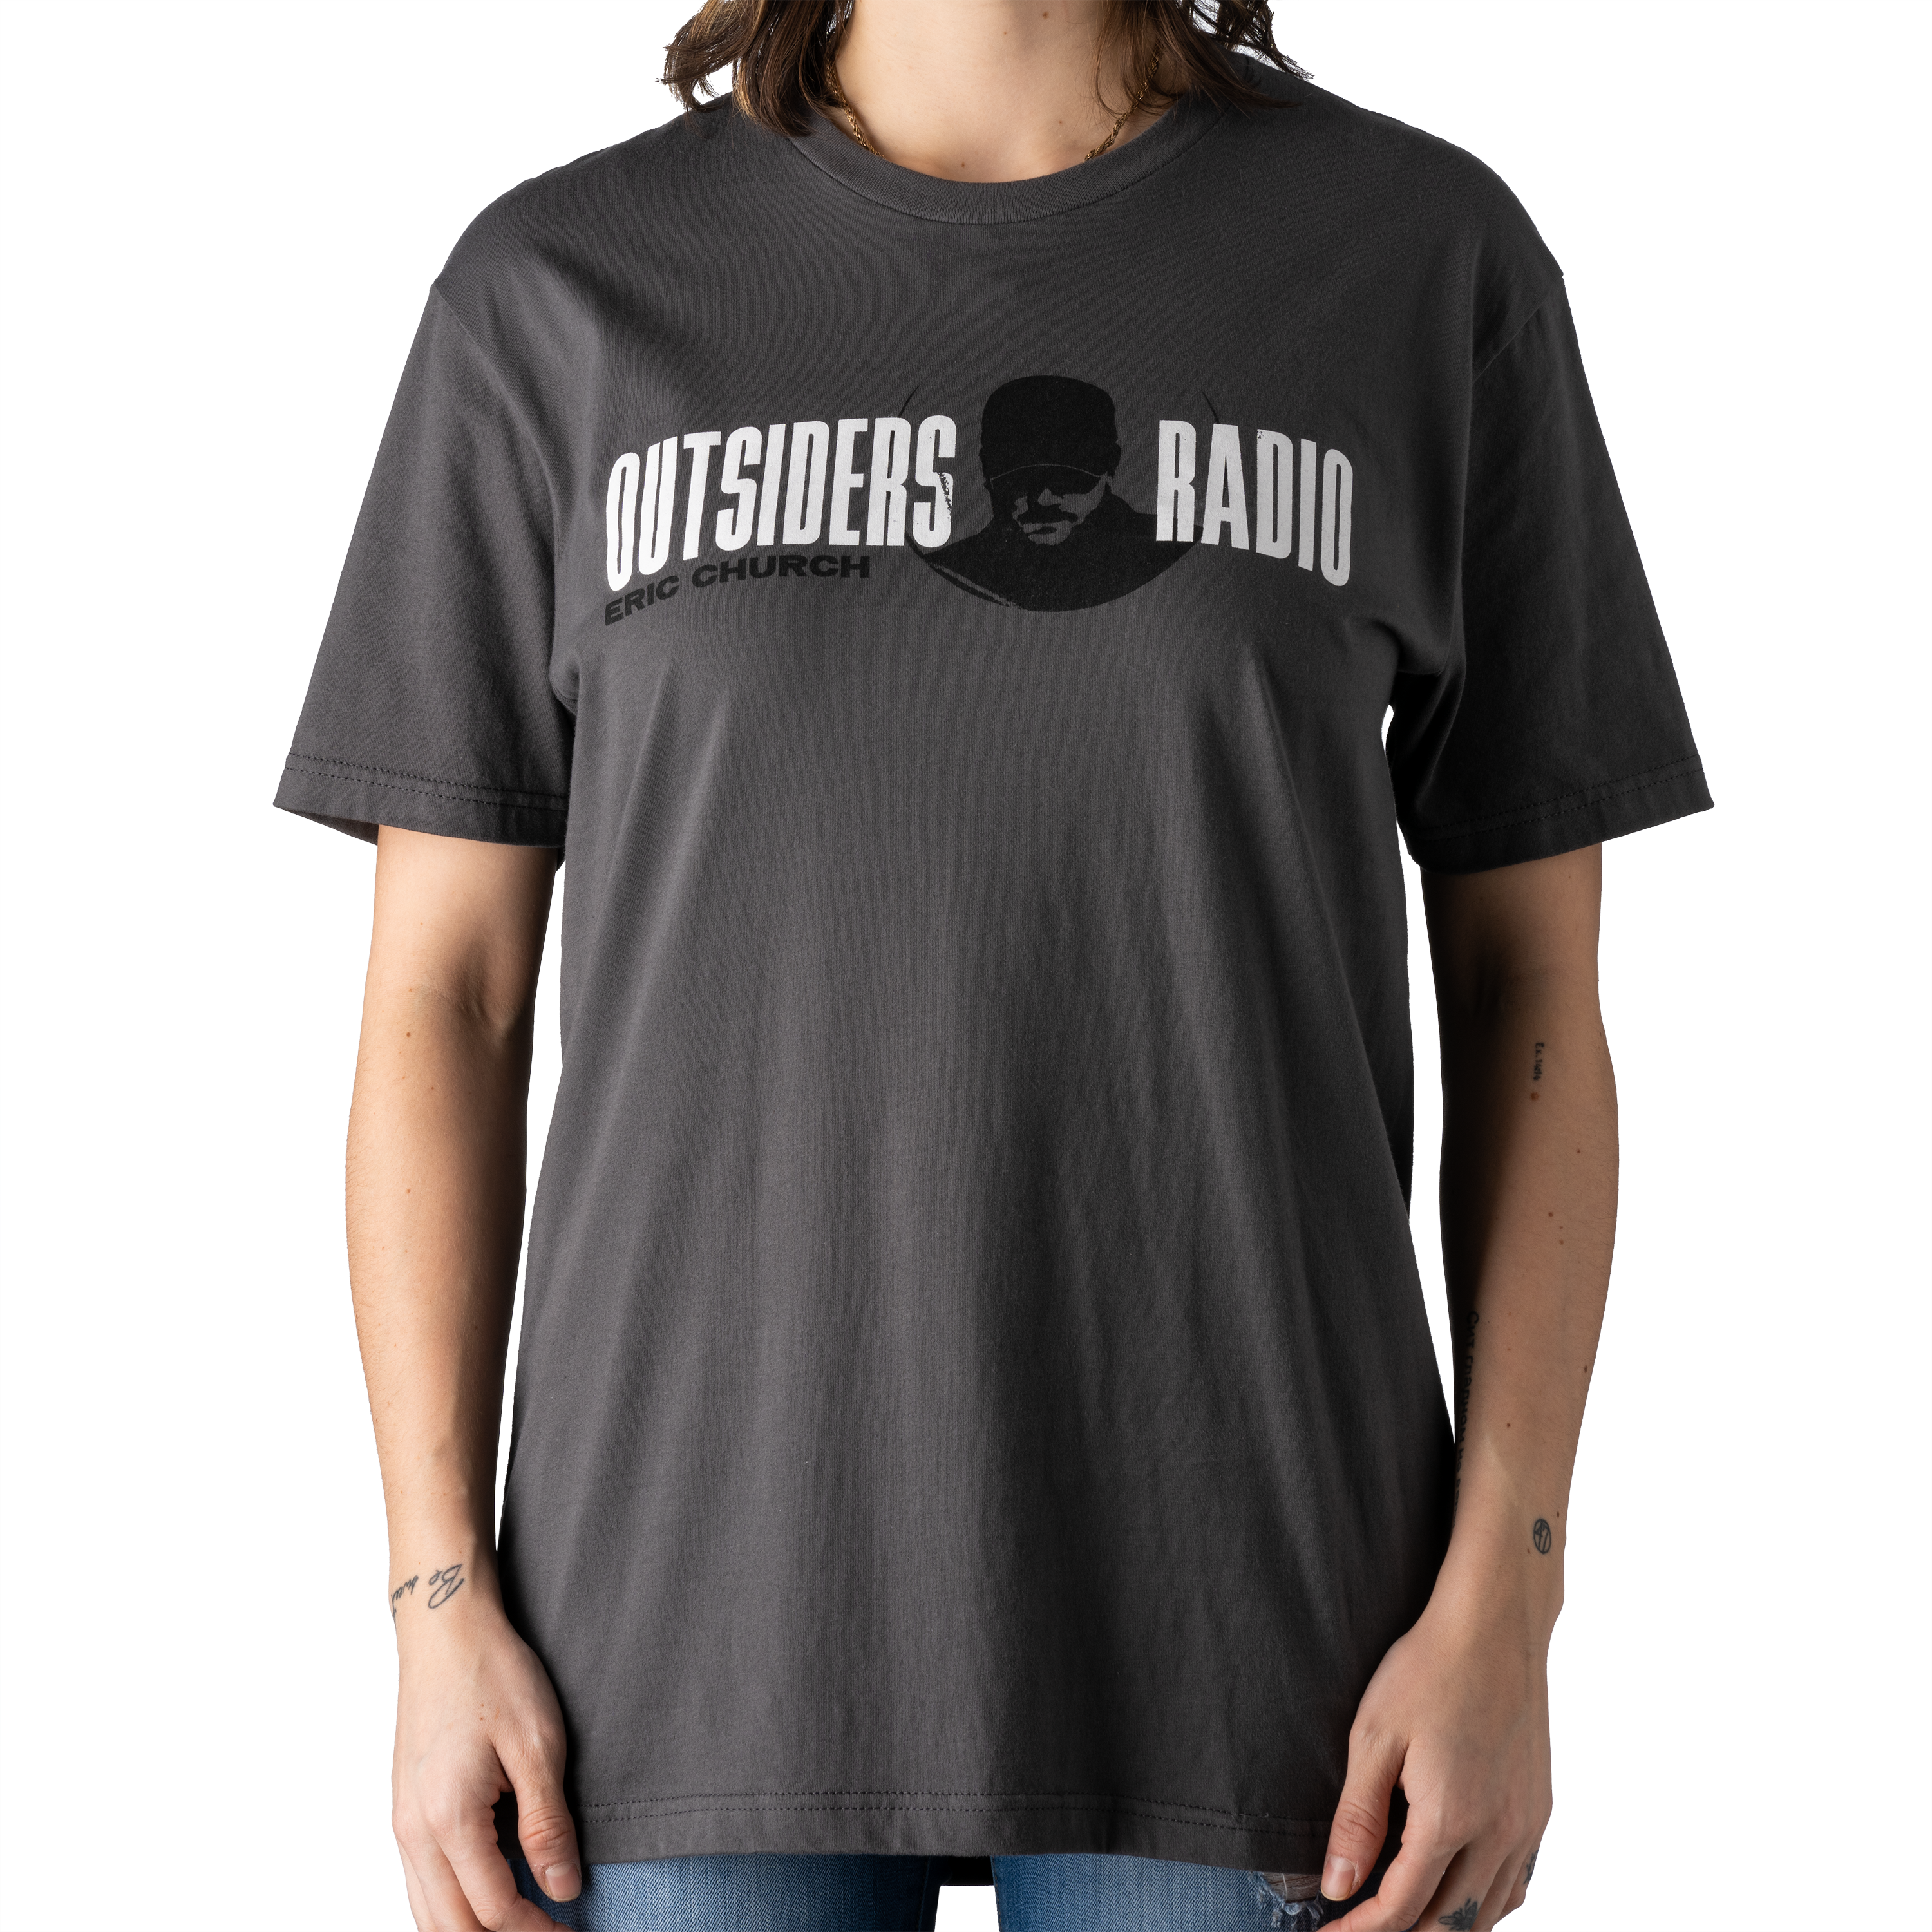 Outsiders Radio T-Shirt